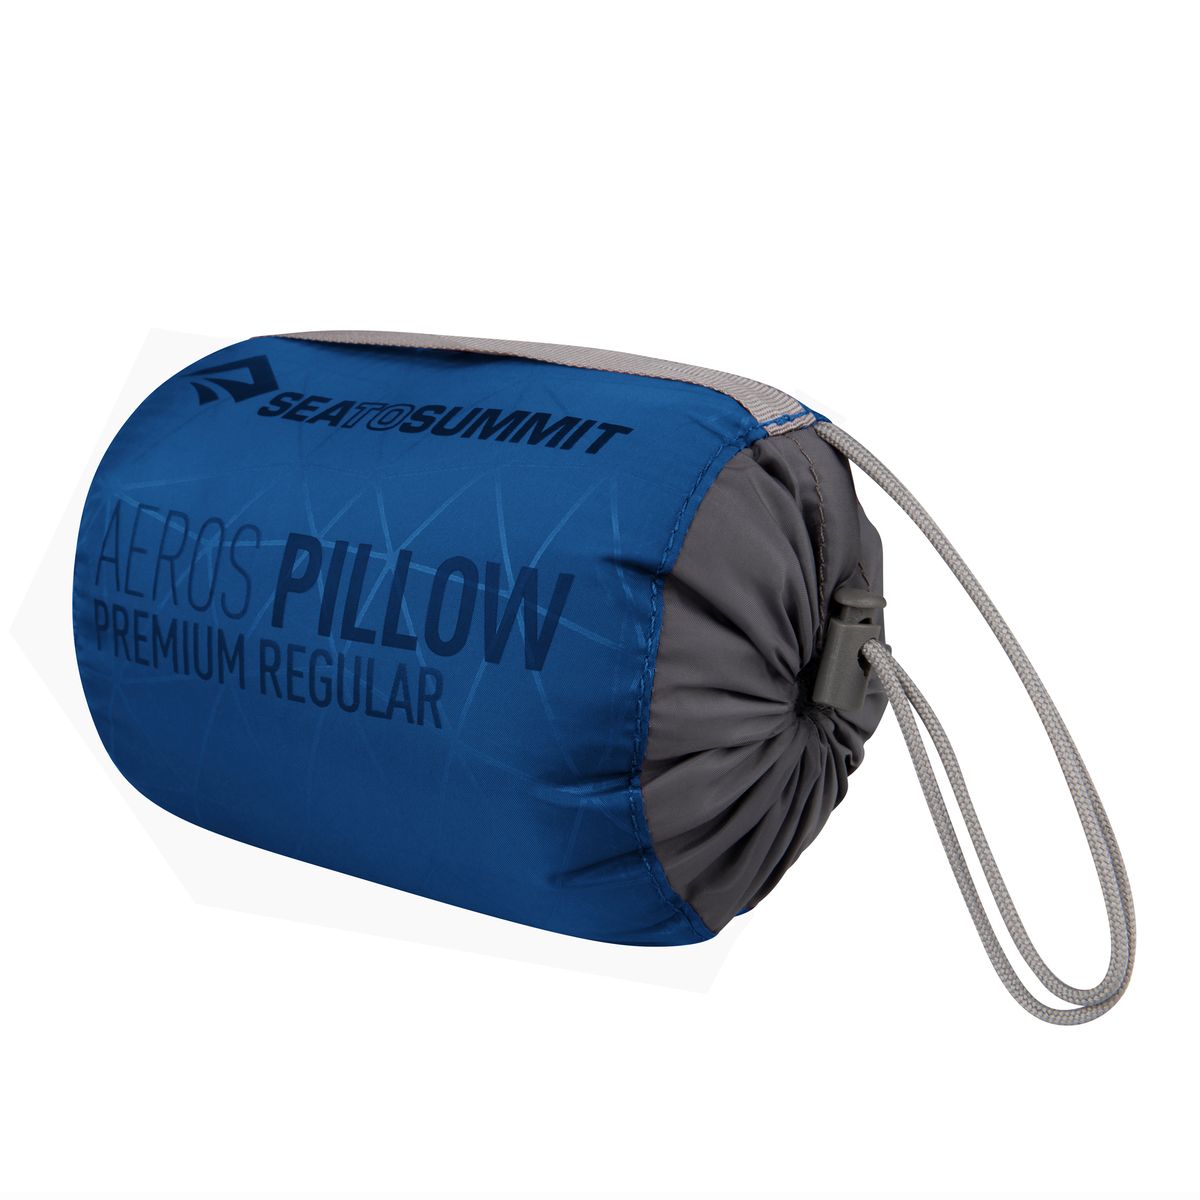 Pillow Aeros Premium Regular